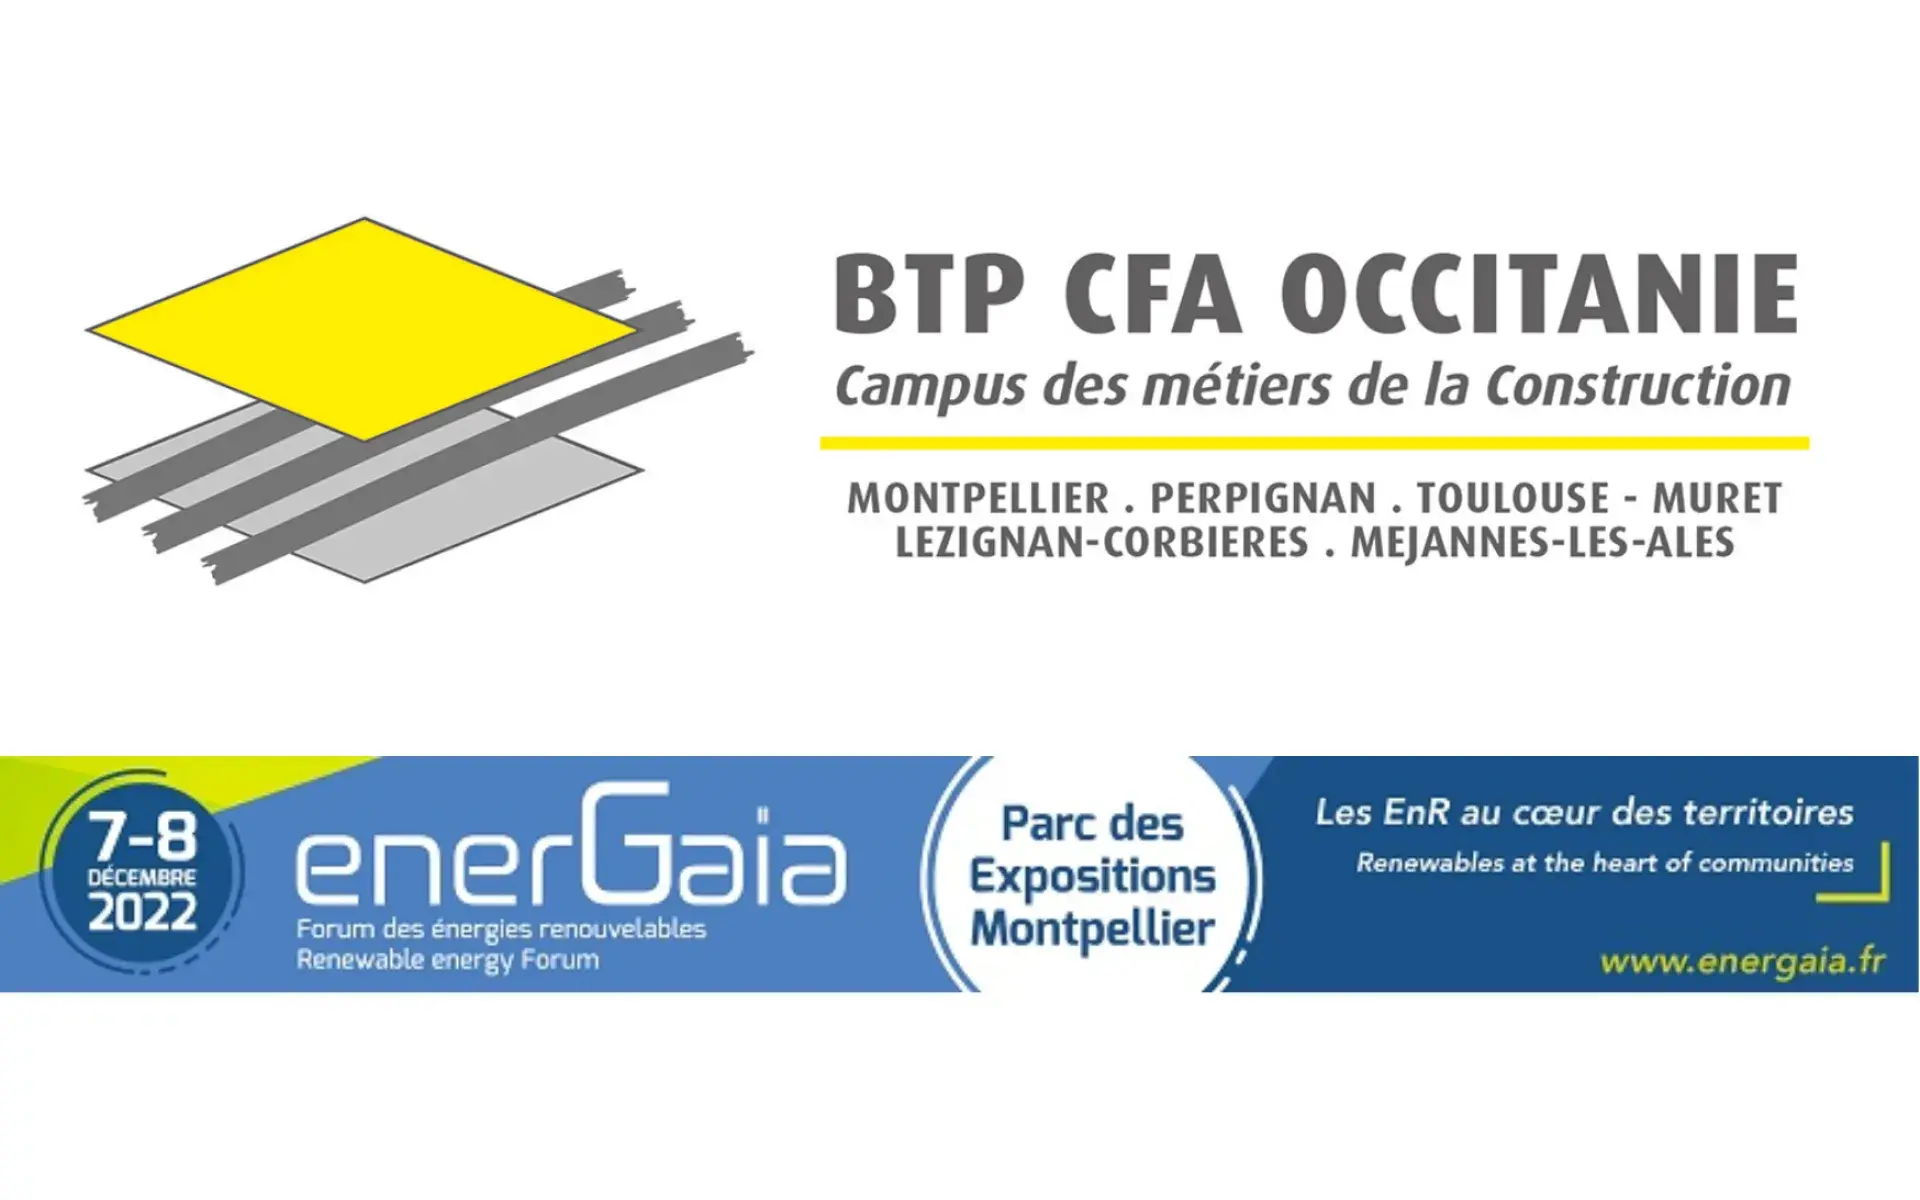 Présence de BTP CFA Occitanie au forum enerGaïa